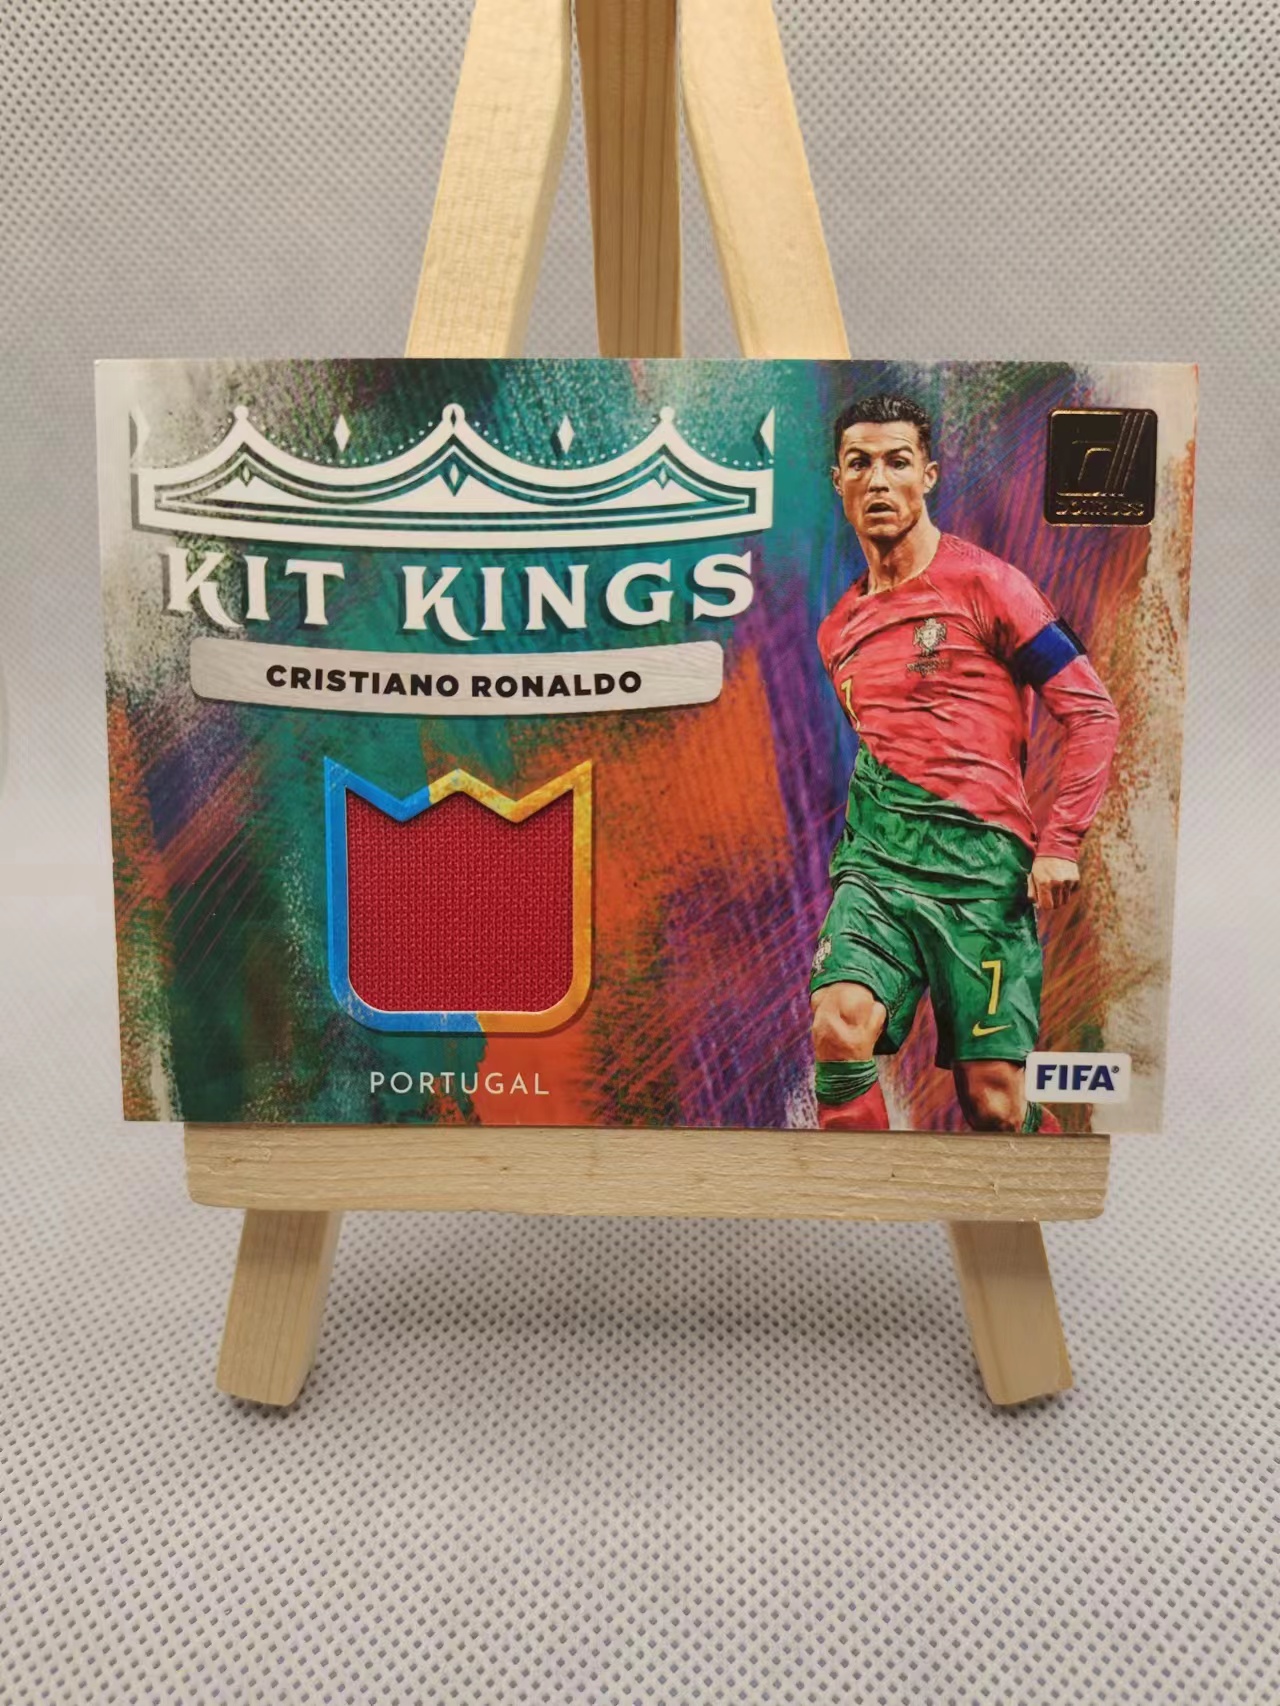 2022-23 Panini Donruss Cristiano Ronaldo 杜蕾斯系列 卡塔尔世界杯 葡萄牙选图 C罗 克里斯蒂亚诺 罗纳尔多 皇冠球衣物料切片  卡品如图 收藏必备 欢迎议价